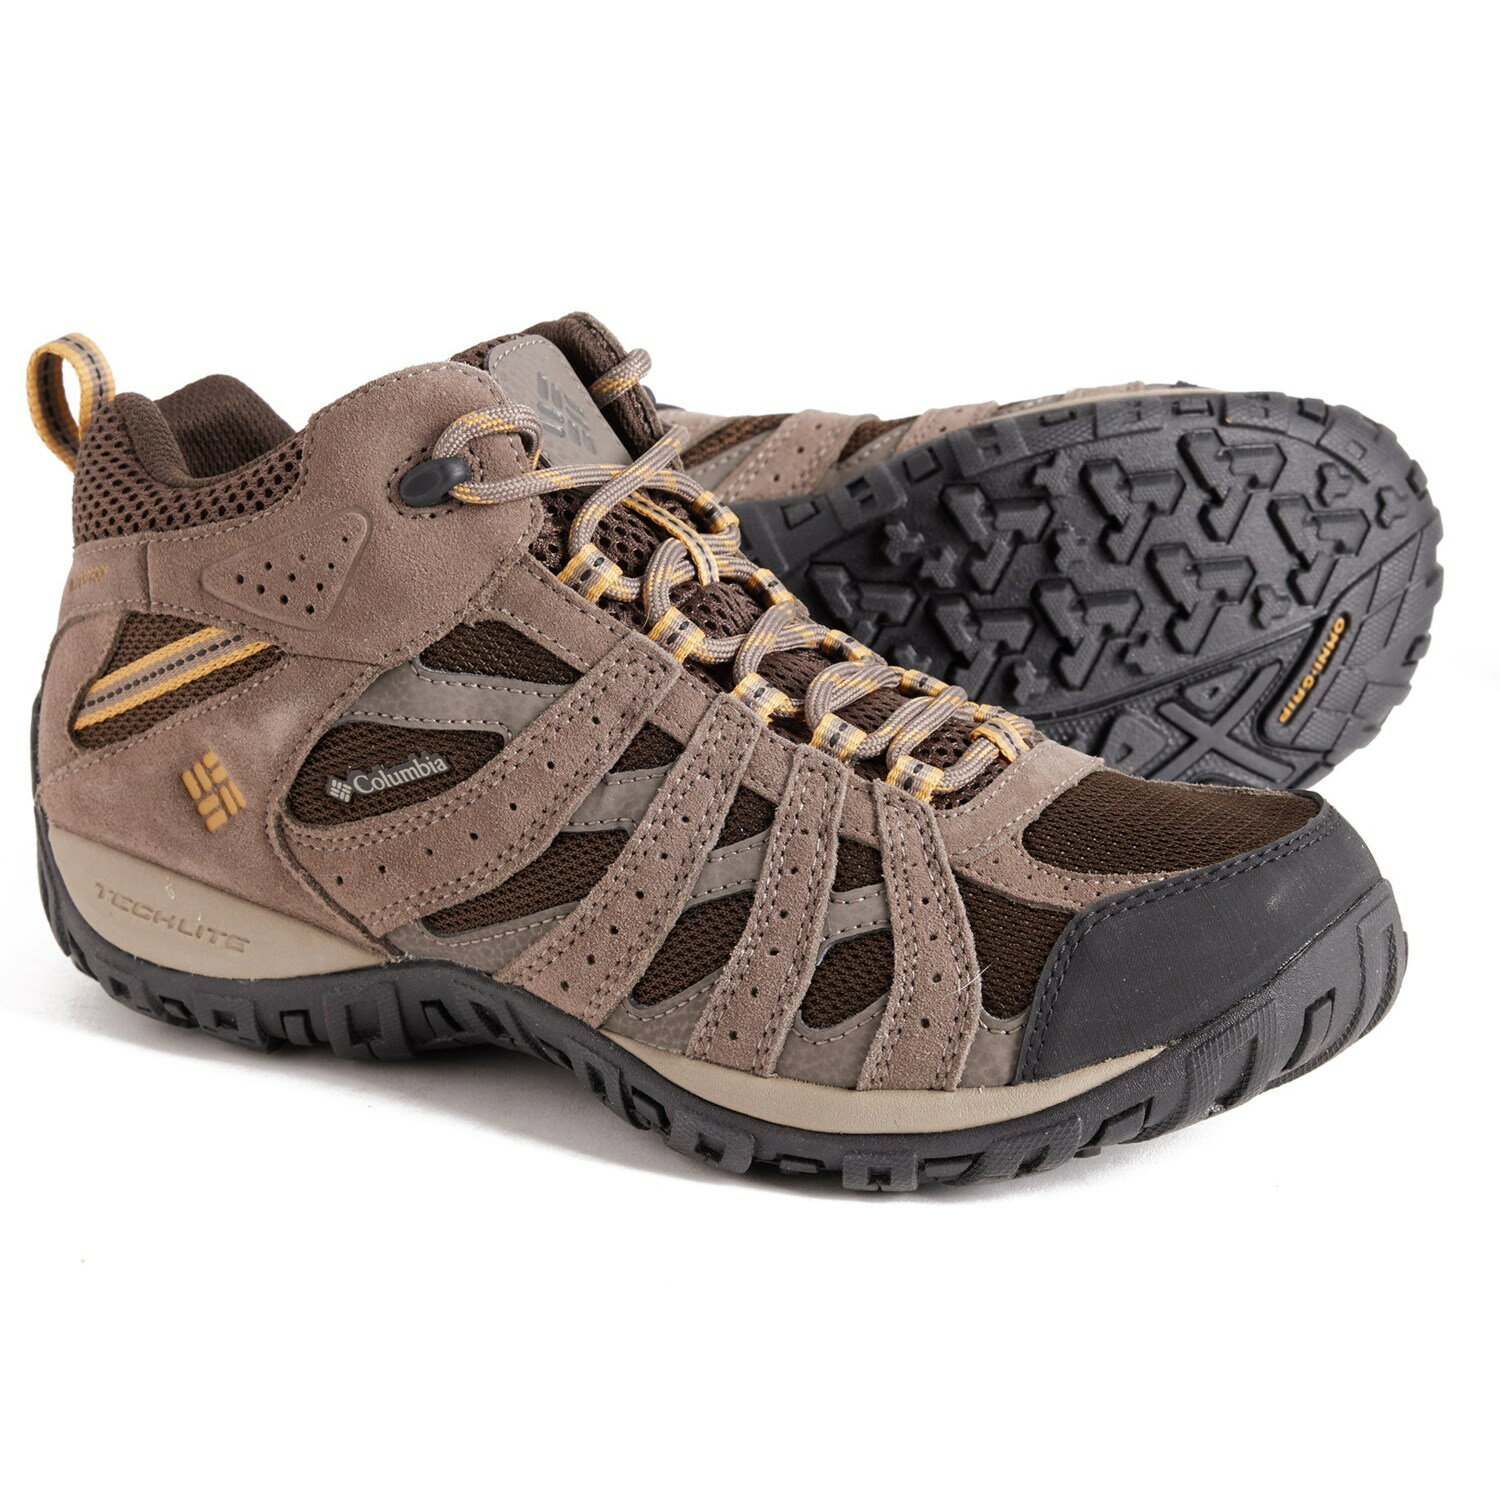 コロンビア (取寄) コロンビアスポーツウェア メンズ レッドモンド 3 オムニ-テック ミッド ハイキング ブーツ Columbia Sportswear men Redmond III Omni-Tech Mid Hiking Boots (For Men) Cordovan